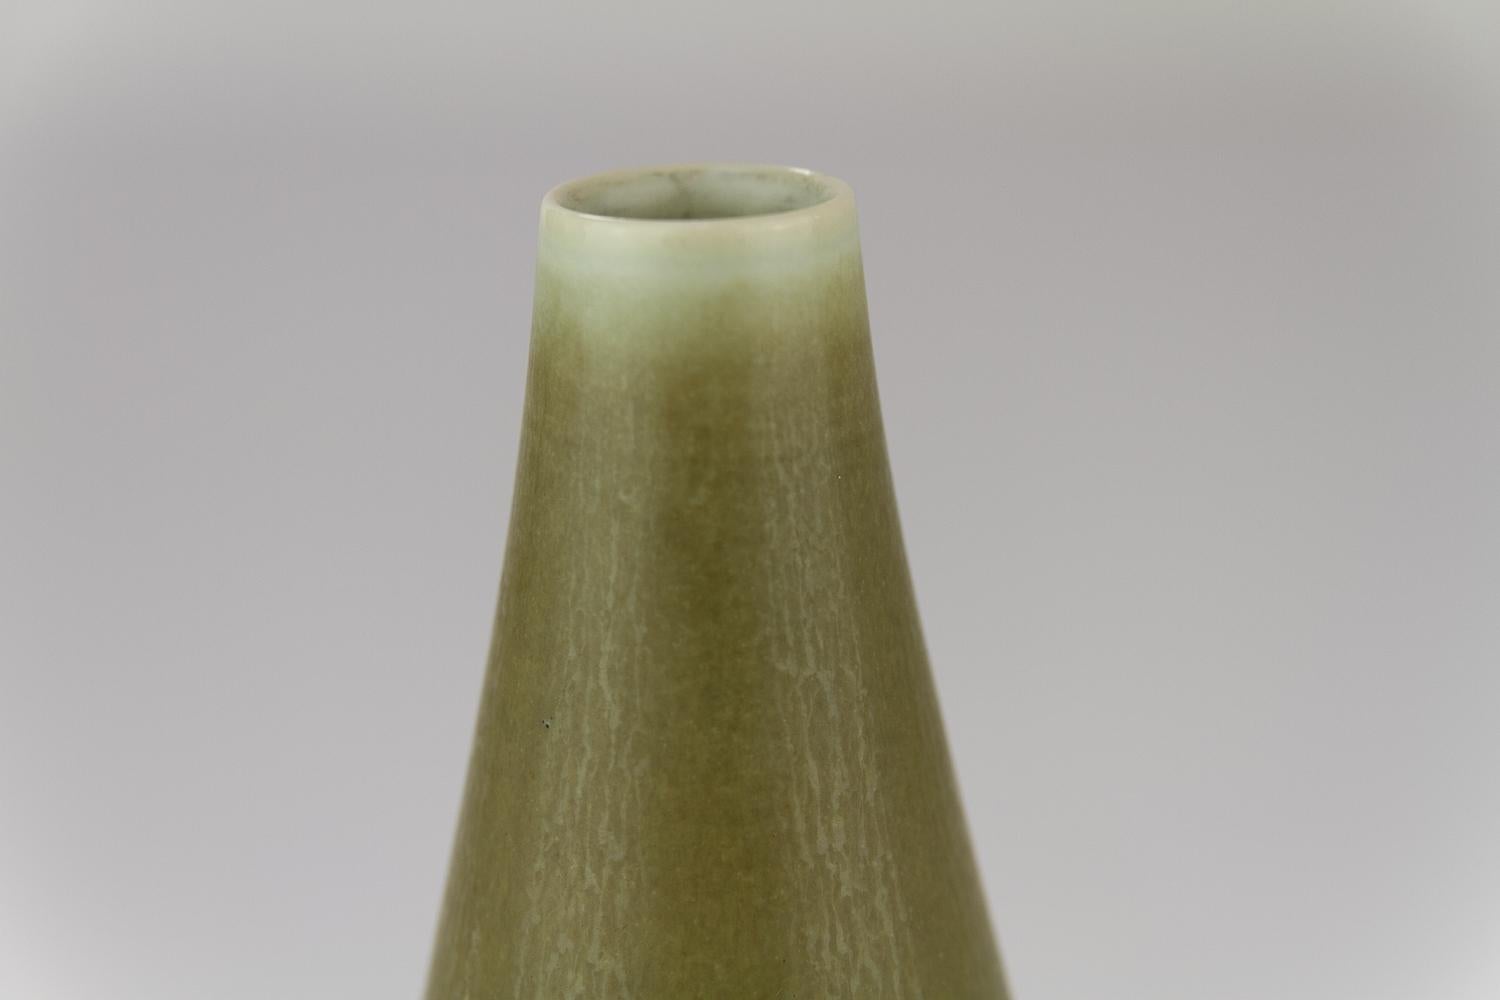 Danish Modern Ceramic Vase by Per Linnemann-Schmidt for Palshus, 1960s. For Sale 3